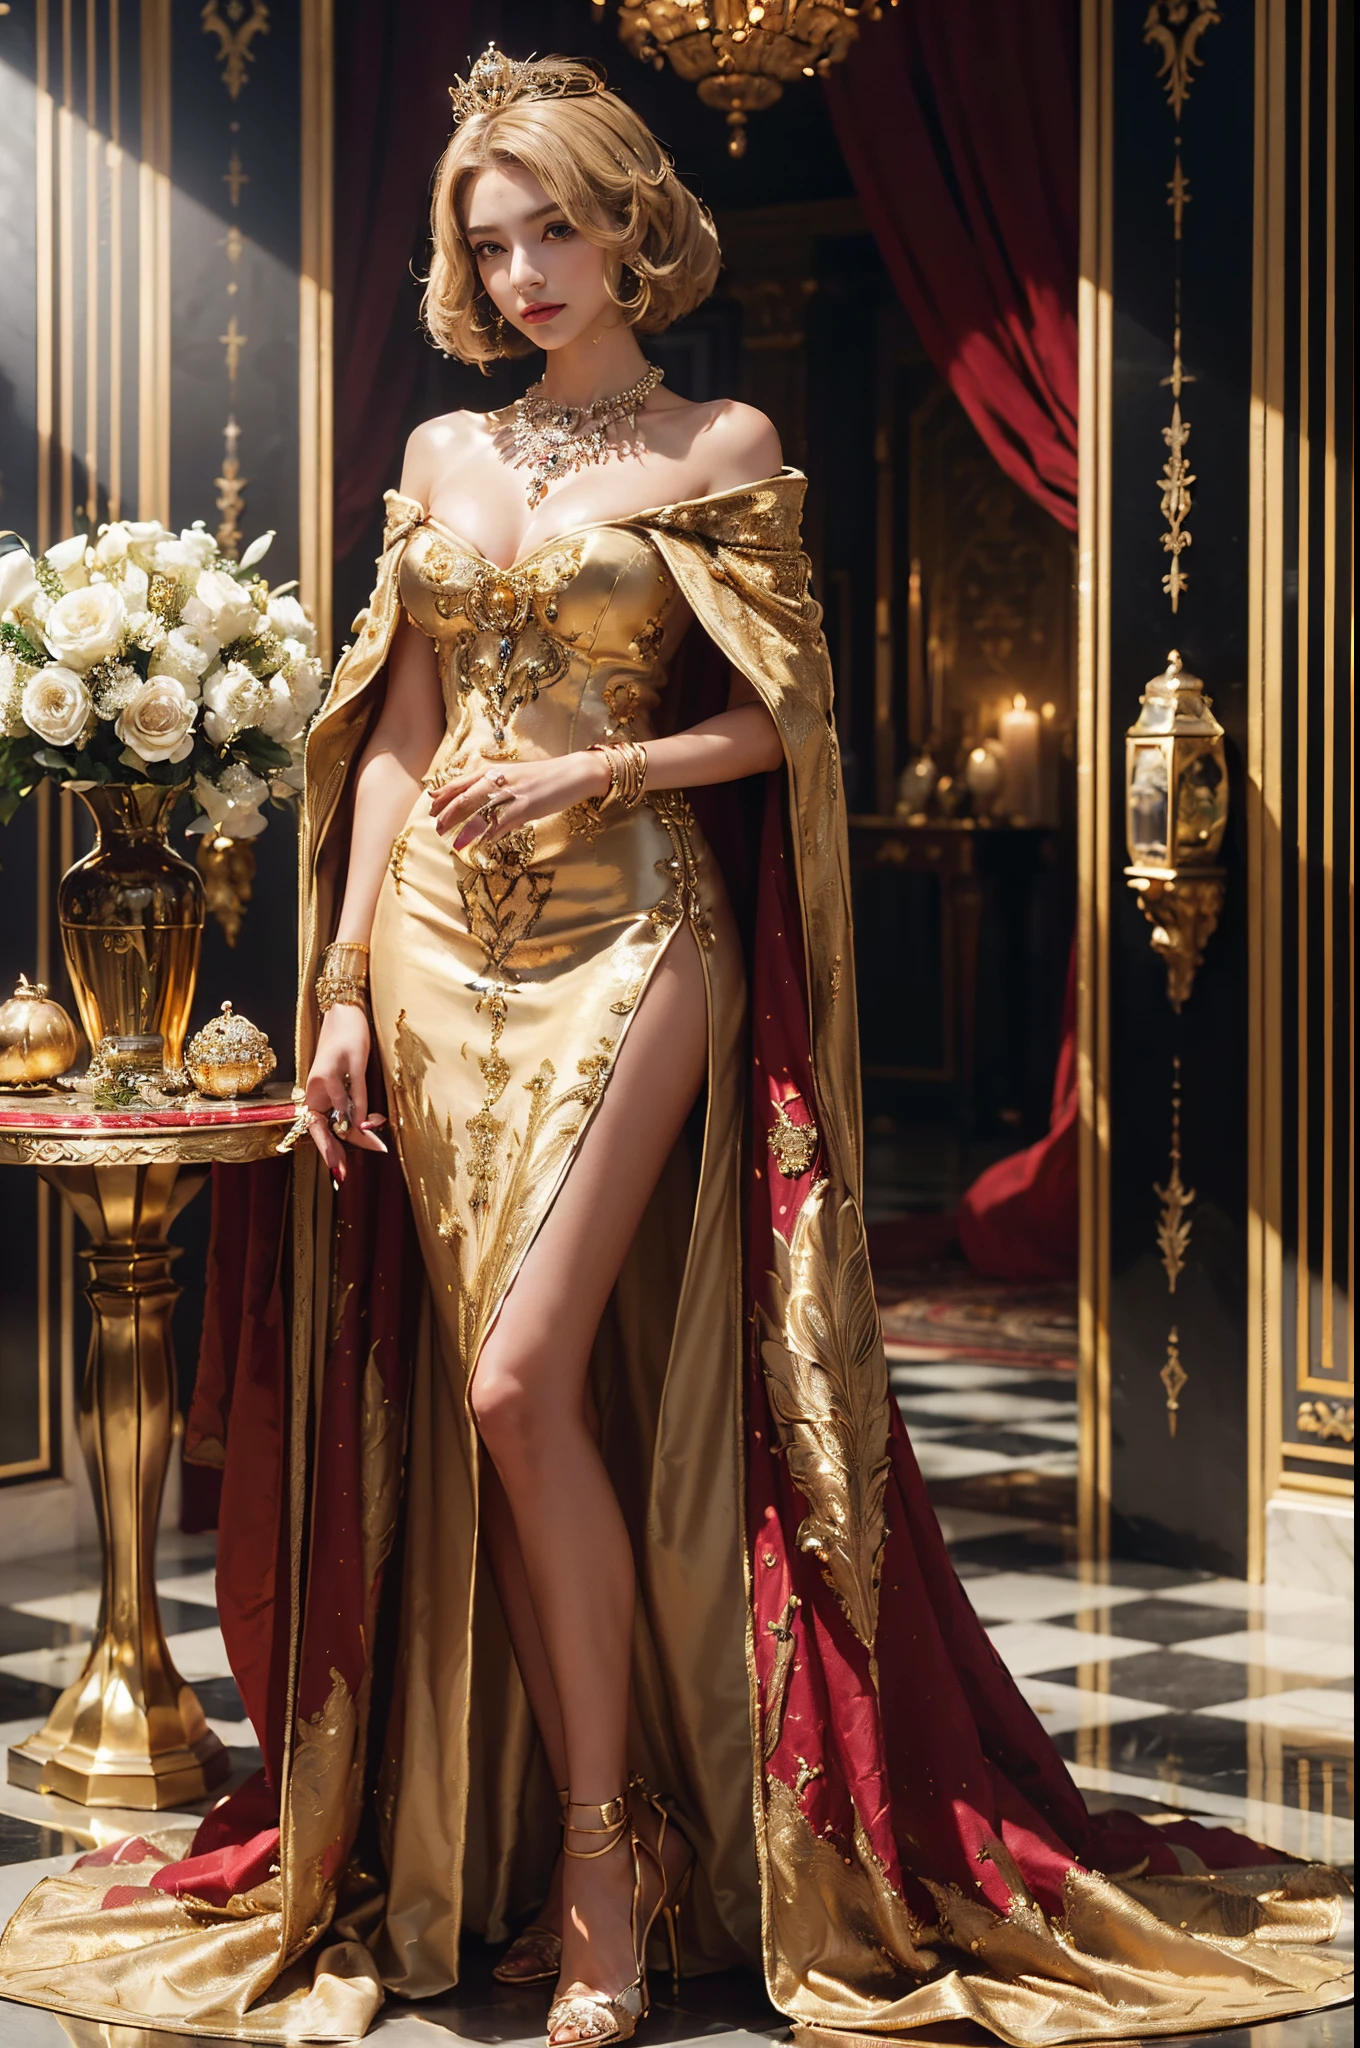 (美しい女王, ミディアムボブヘア, 王のホールに立つ, (高級クラウン), (ラグジュアリーマント), 着る (細部までこだわった豪華なヘアピン), (豪華な女王のガウンの詳細), (高級ハイヒール), (細かい装飾), (詳細アクセサリー), 高価なディテールネックレス, 豪華なテーブルの上の金色の花瓶, 高級香水瓶, 豪華な壁飾り, 豪華な窓と金色のフレーム, 豪華なキングスホール, 細部の豪華な黄金のランプ, 高級キャンドル, 美しい顔, かわいらしい顔, 美しい目, 美しい鼻, レイトレーシング, 美しい指, 美しい手, (豪華な腕飾り), (高級ブレスレット), (高級リング), (高級ネックレス), (片手に4本の指), 全身写真, きれいなメイク, 完璧な解剖学, 良い照明, プロの写真撮影